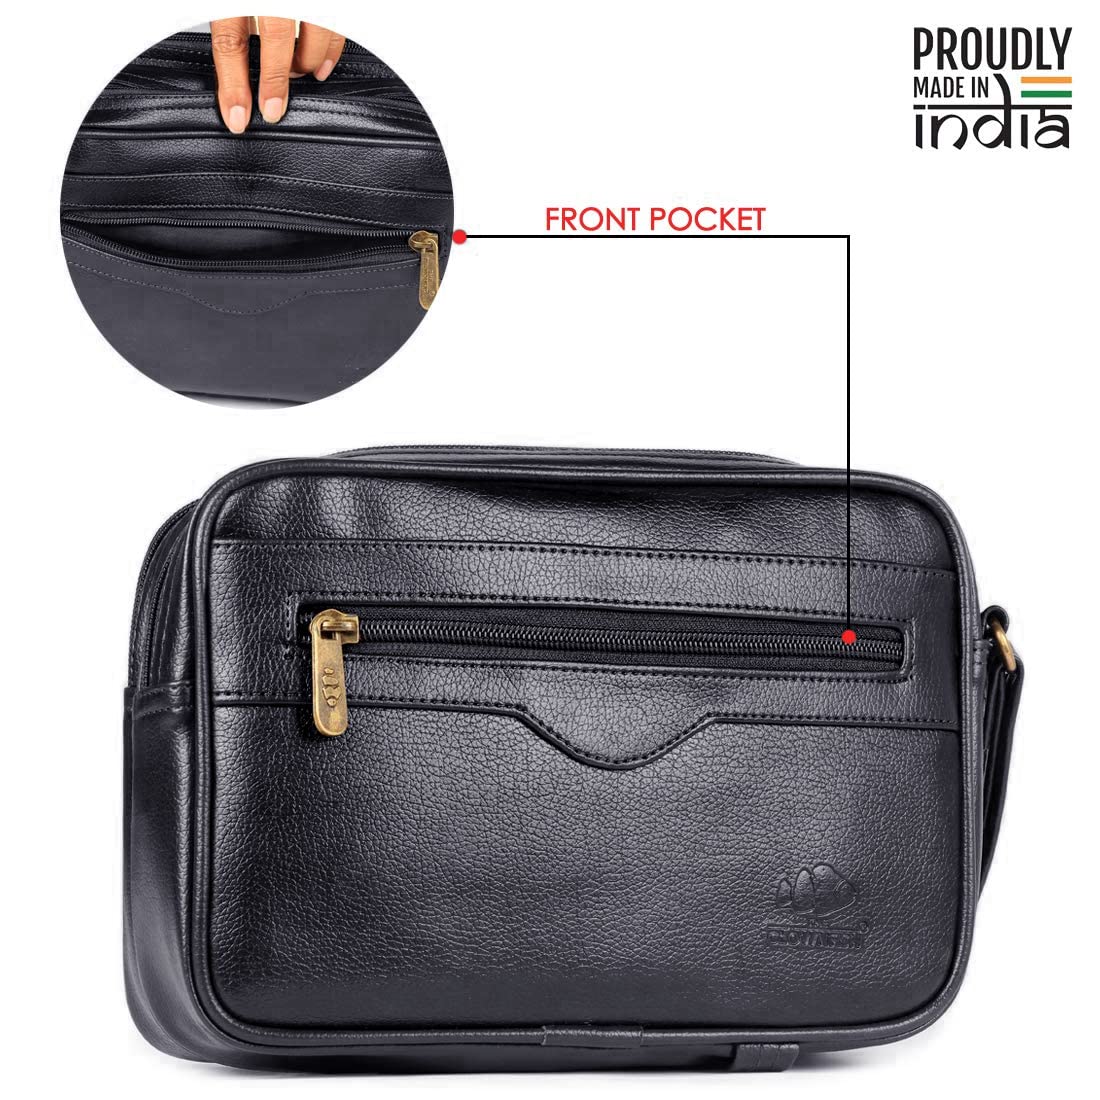 THE CLOWNFISH Men Multipurpose Travel Pouch Money Cash Pouch Wrist Handbag Coin Bag (Black)